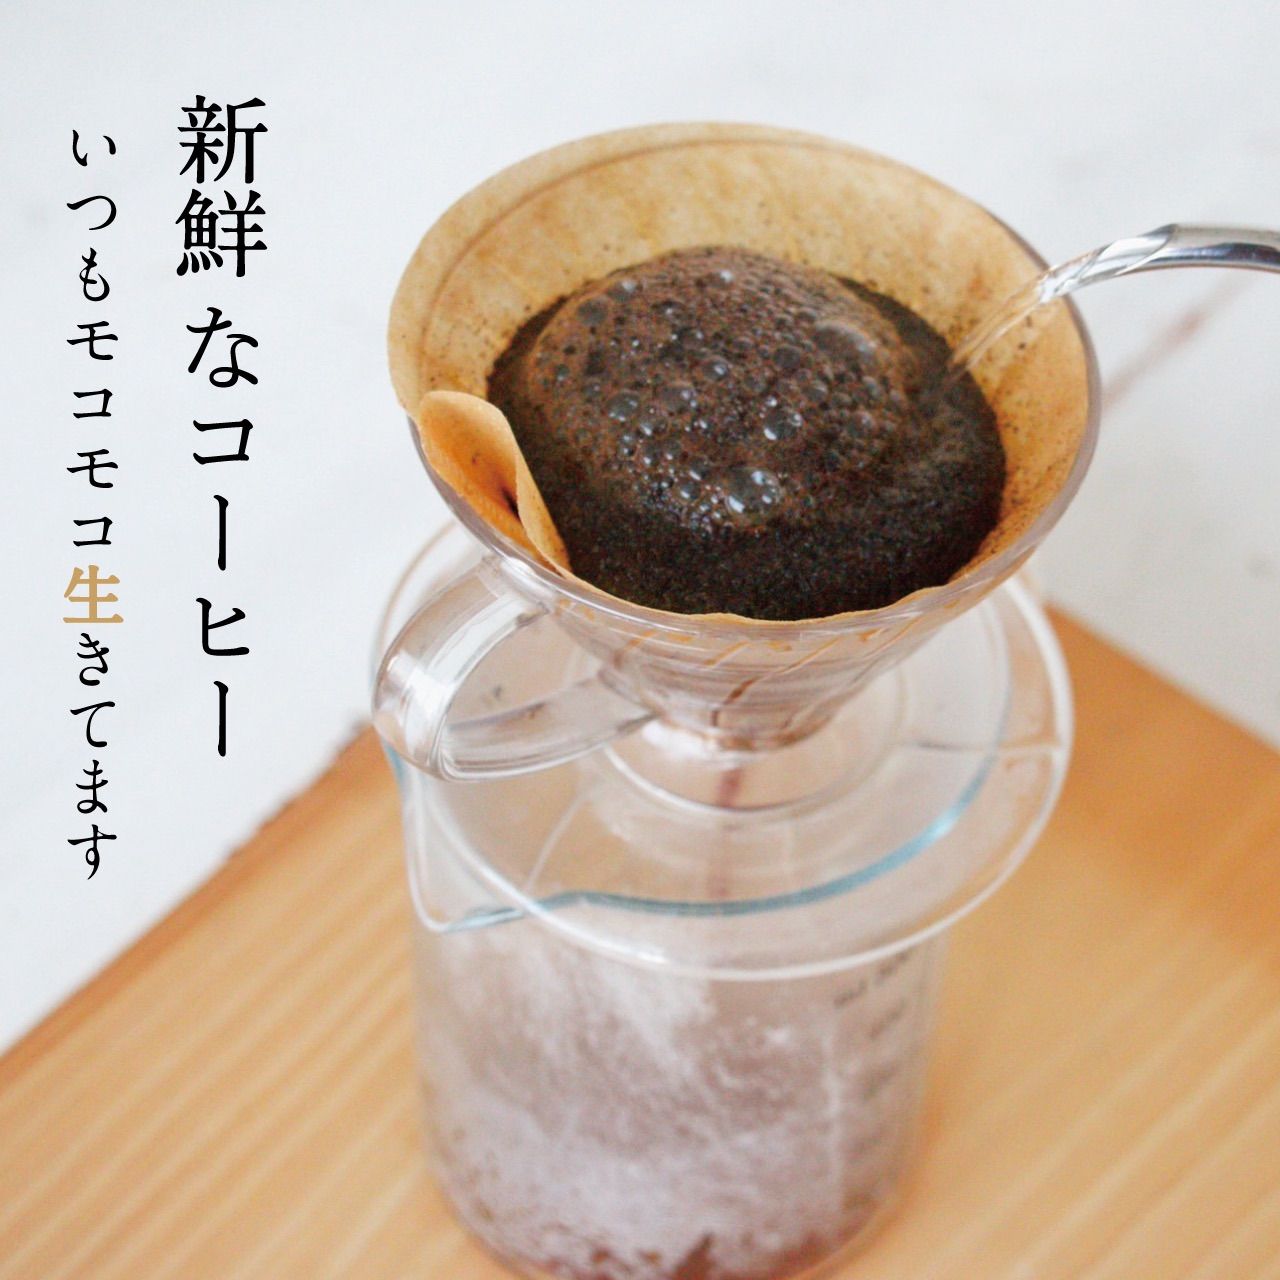 コーヒー豆 200g 自家焙煎黄色いコーヒーの実で甘味が強くクリーンなグァテマラ-4